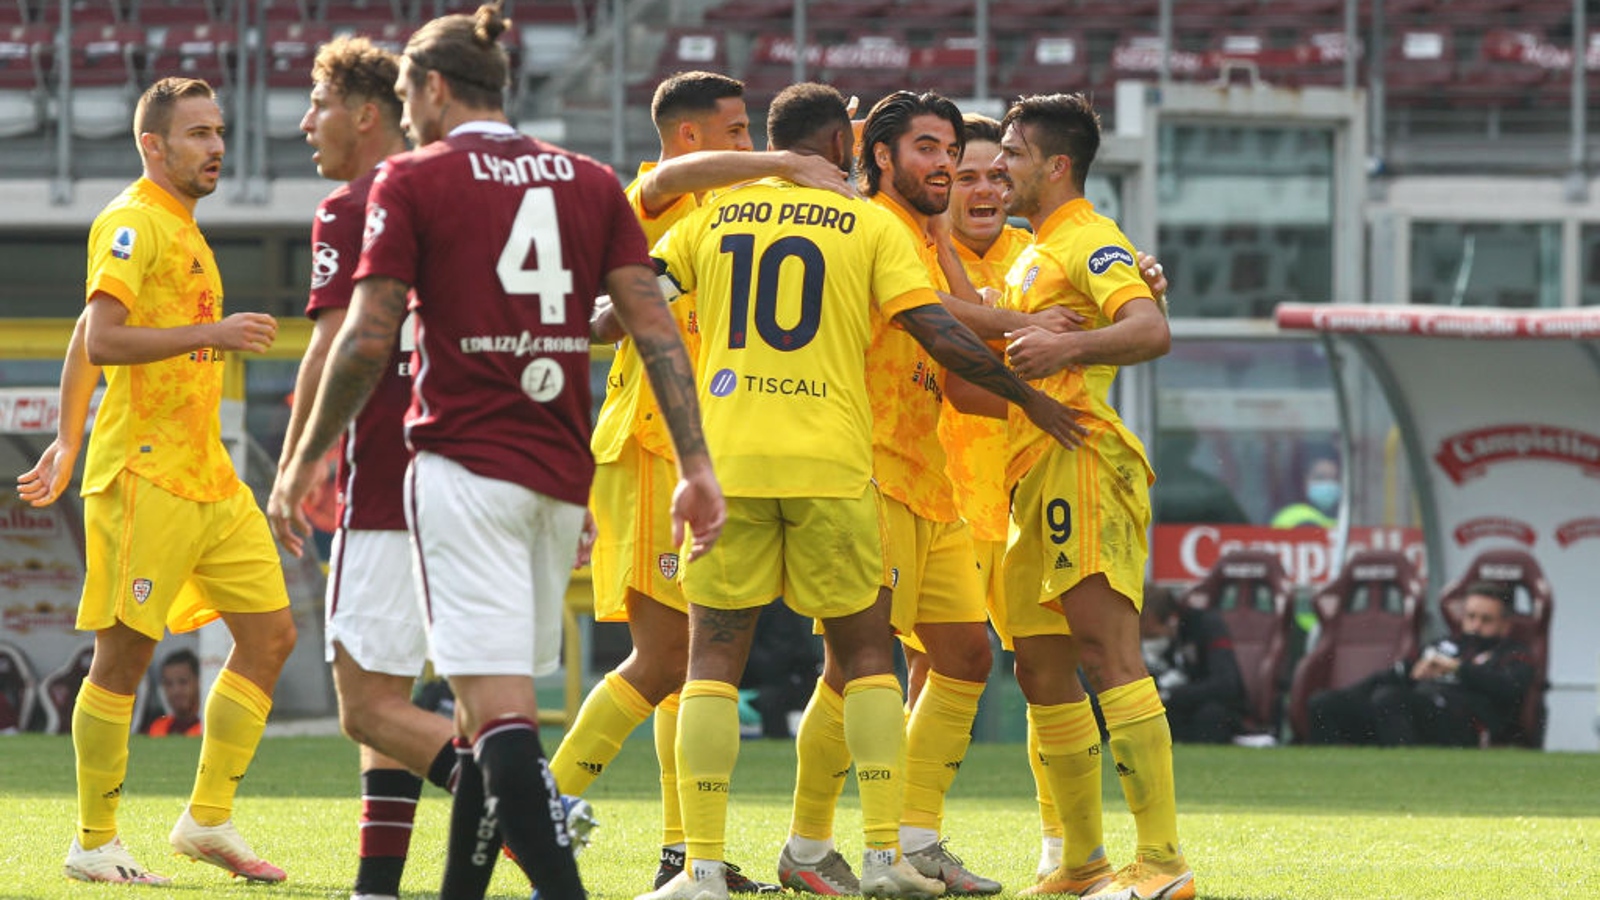 Colpo Cagliari all’Olimpico, terza sconfitta per il Torino (2-3)